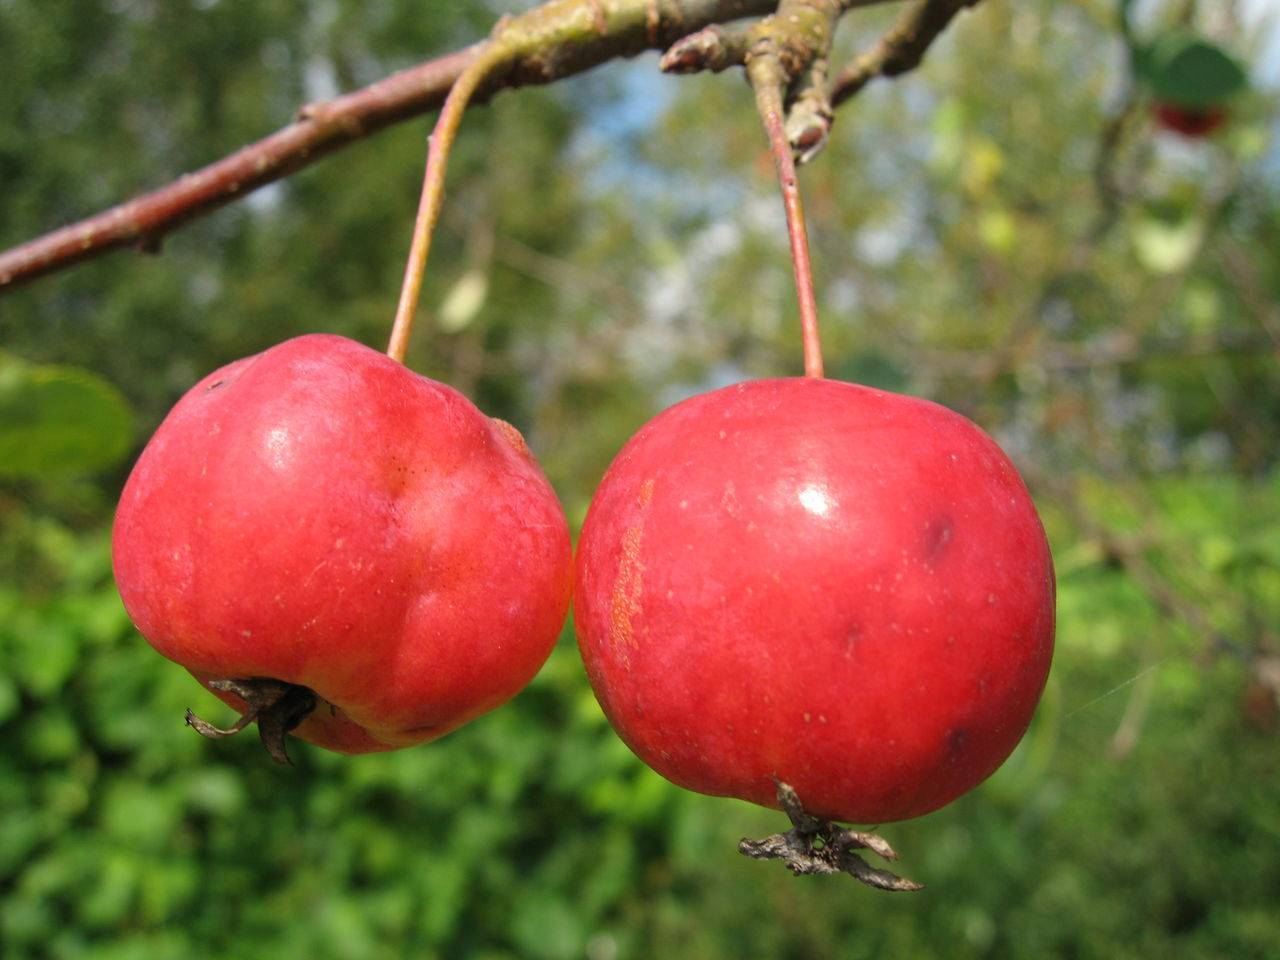 Описание сорта яблони обильноцветущая: фото яблок, важные характеристики, урожайность с дерева